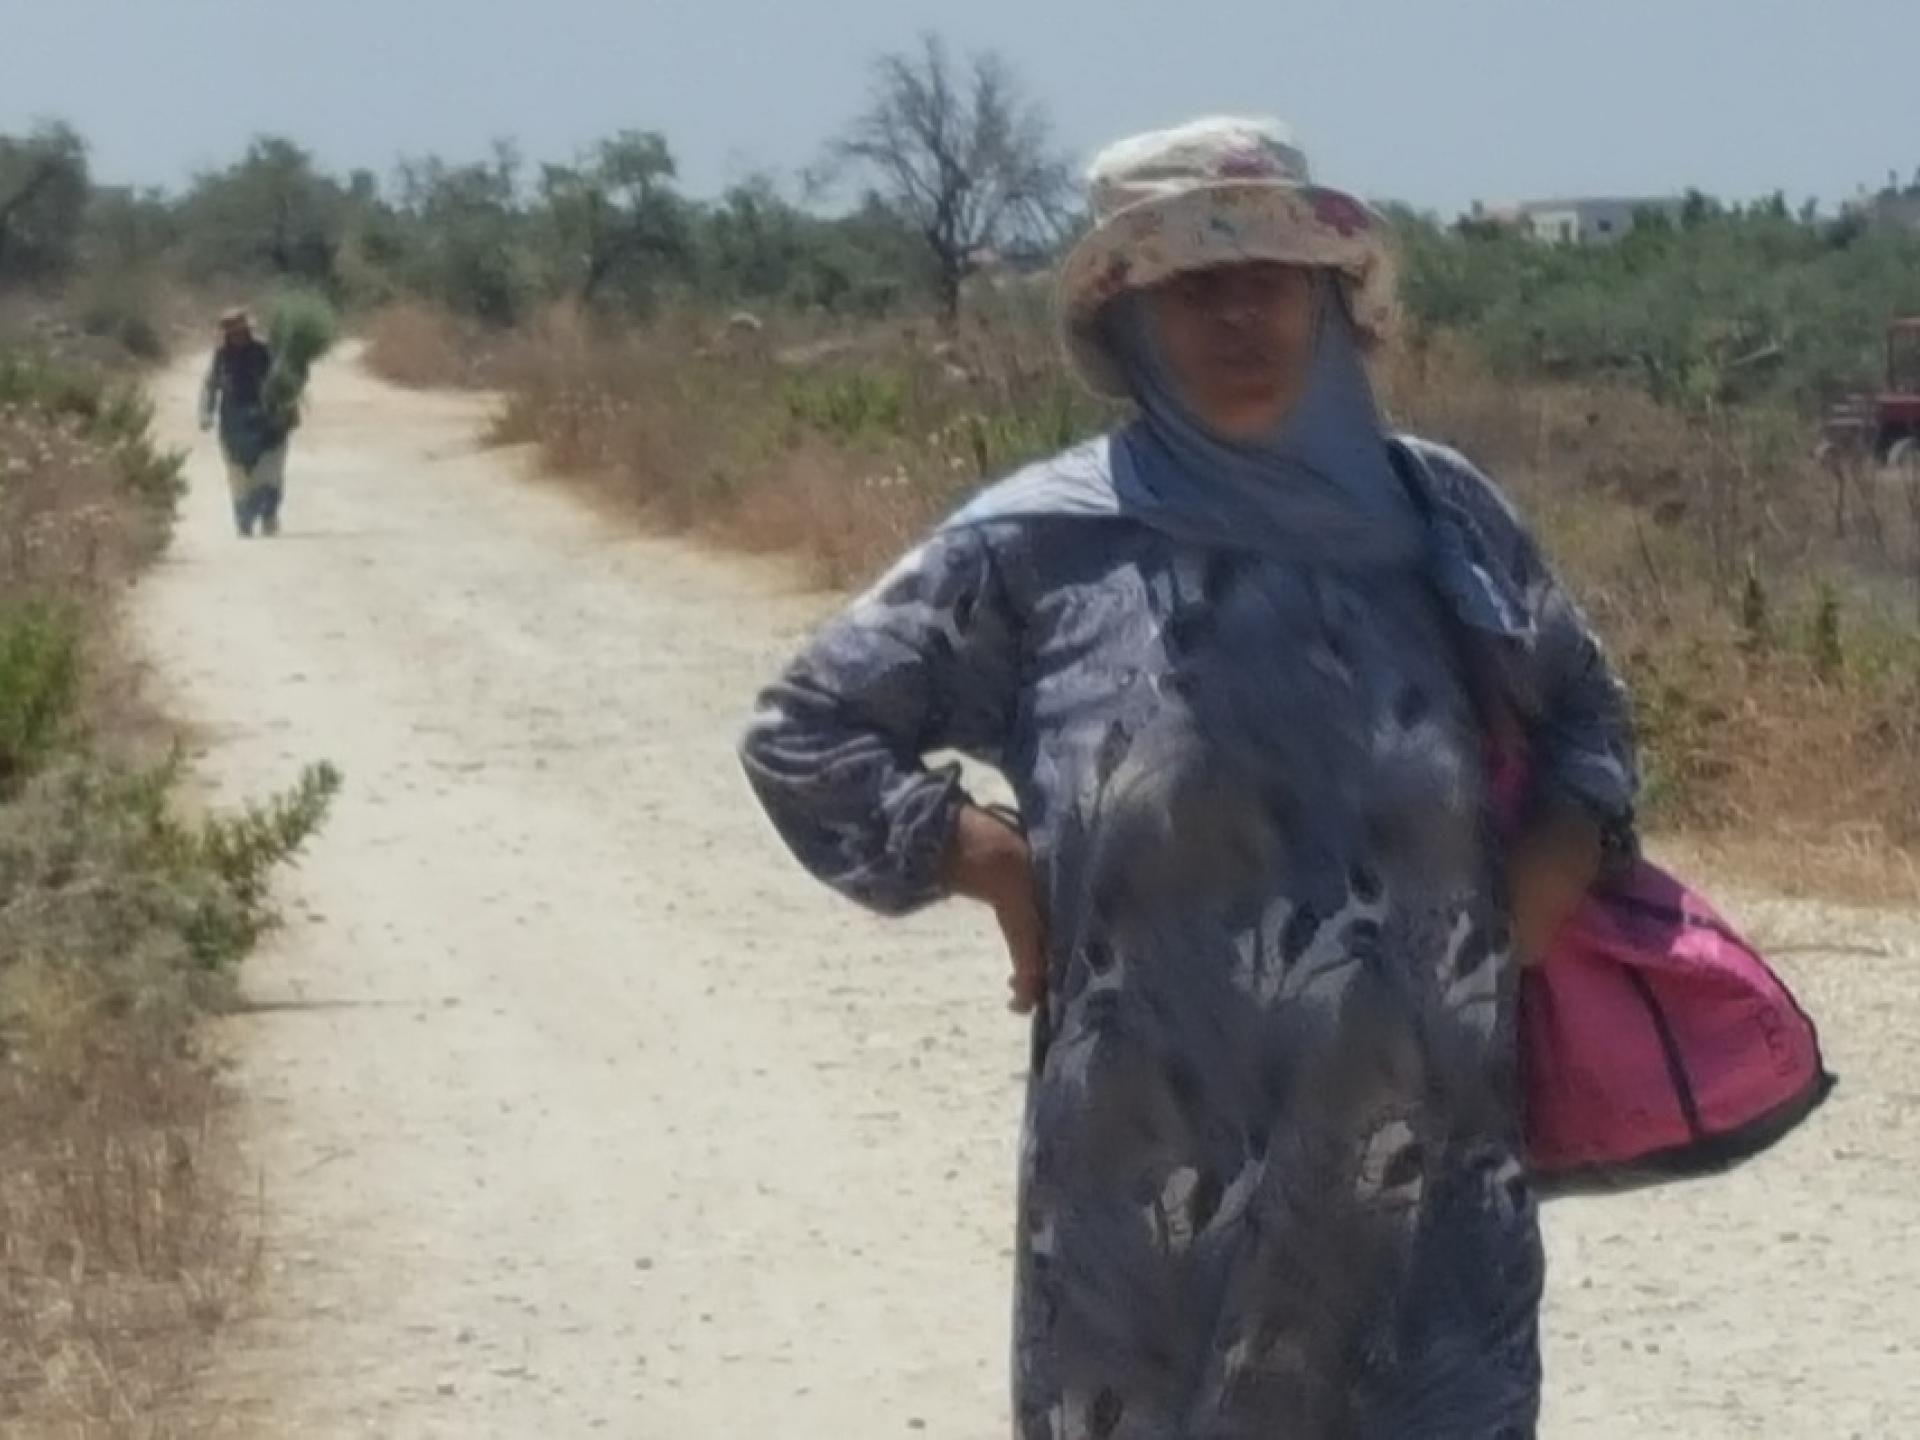 A Palestinian woman farmer